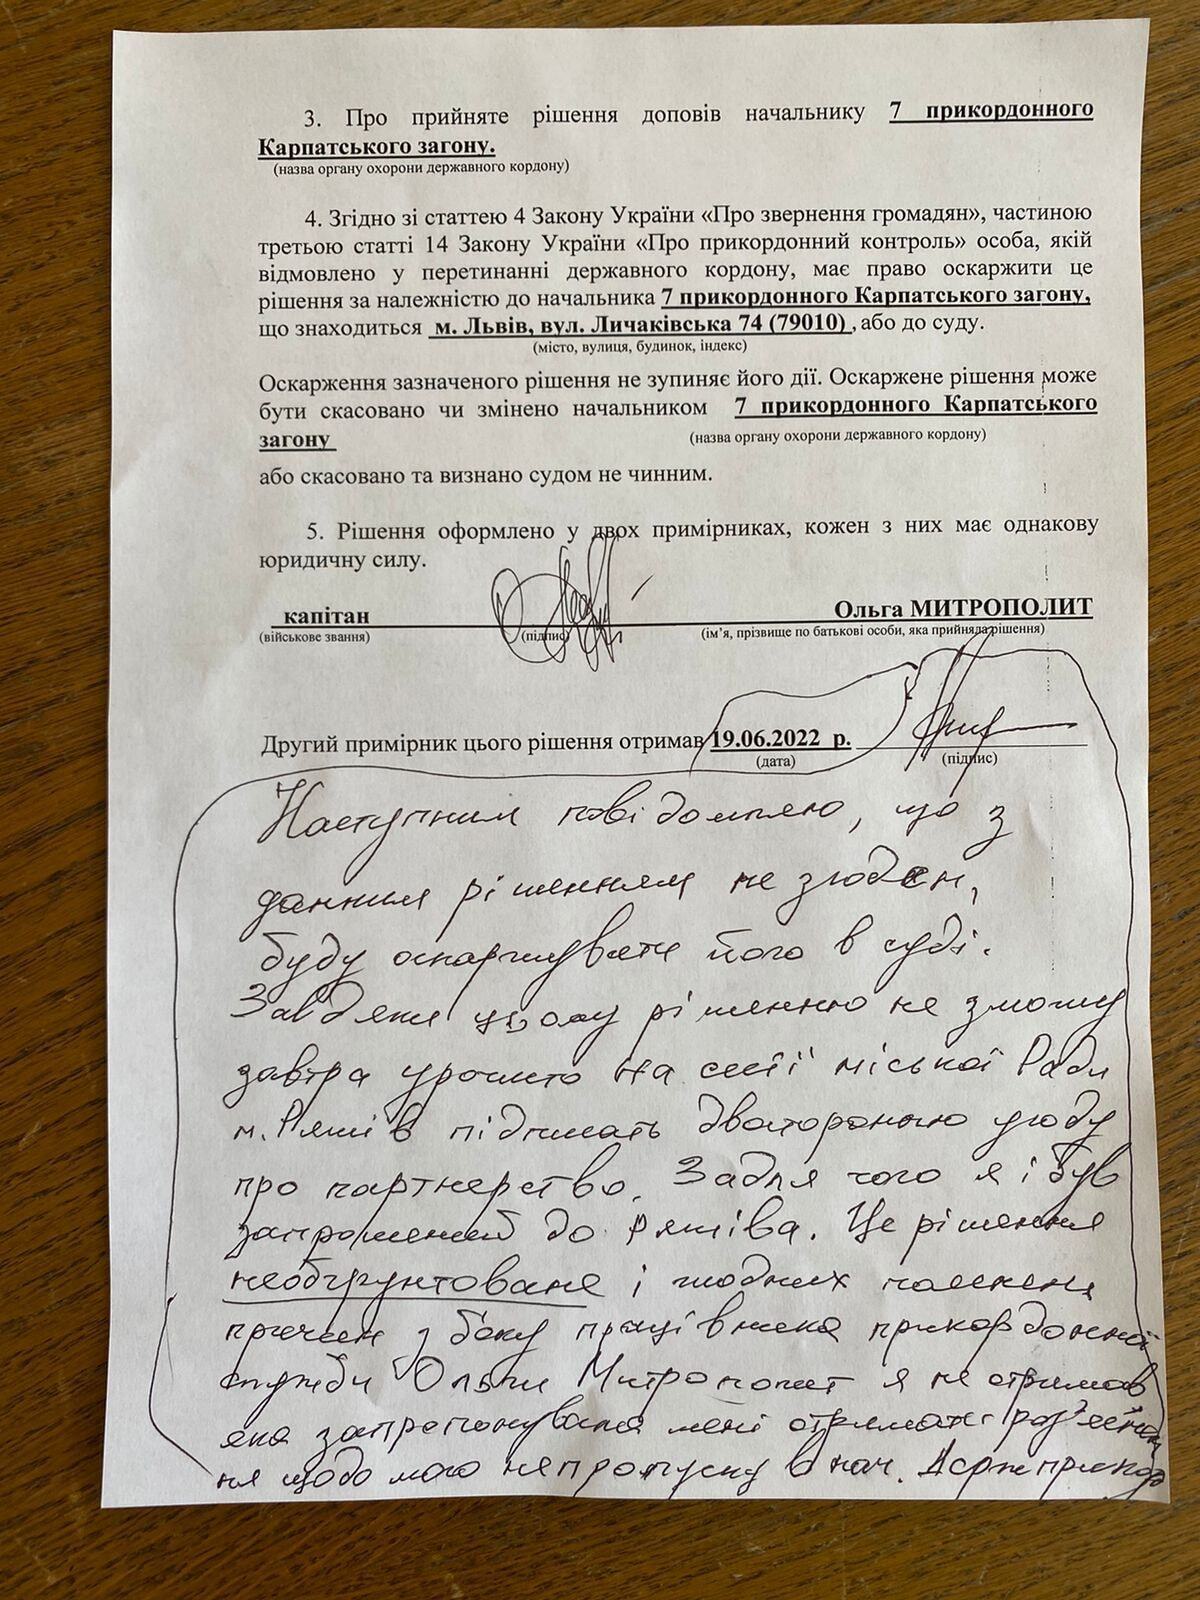 Атрошенка не пропустили через кордон у пропускному пункті "Краковець"